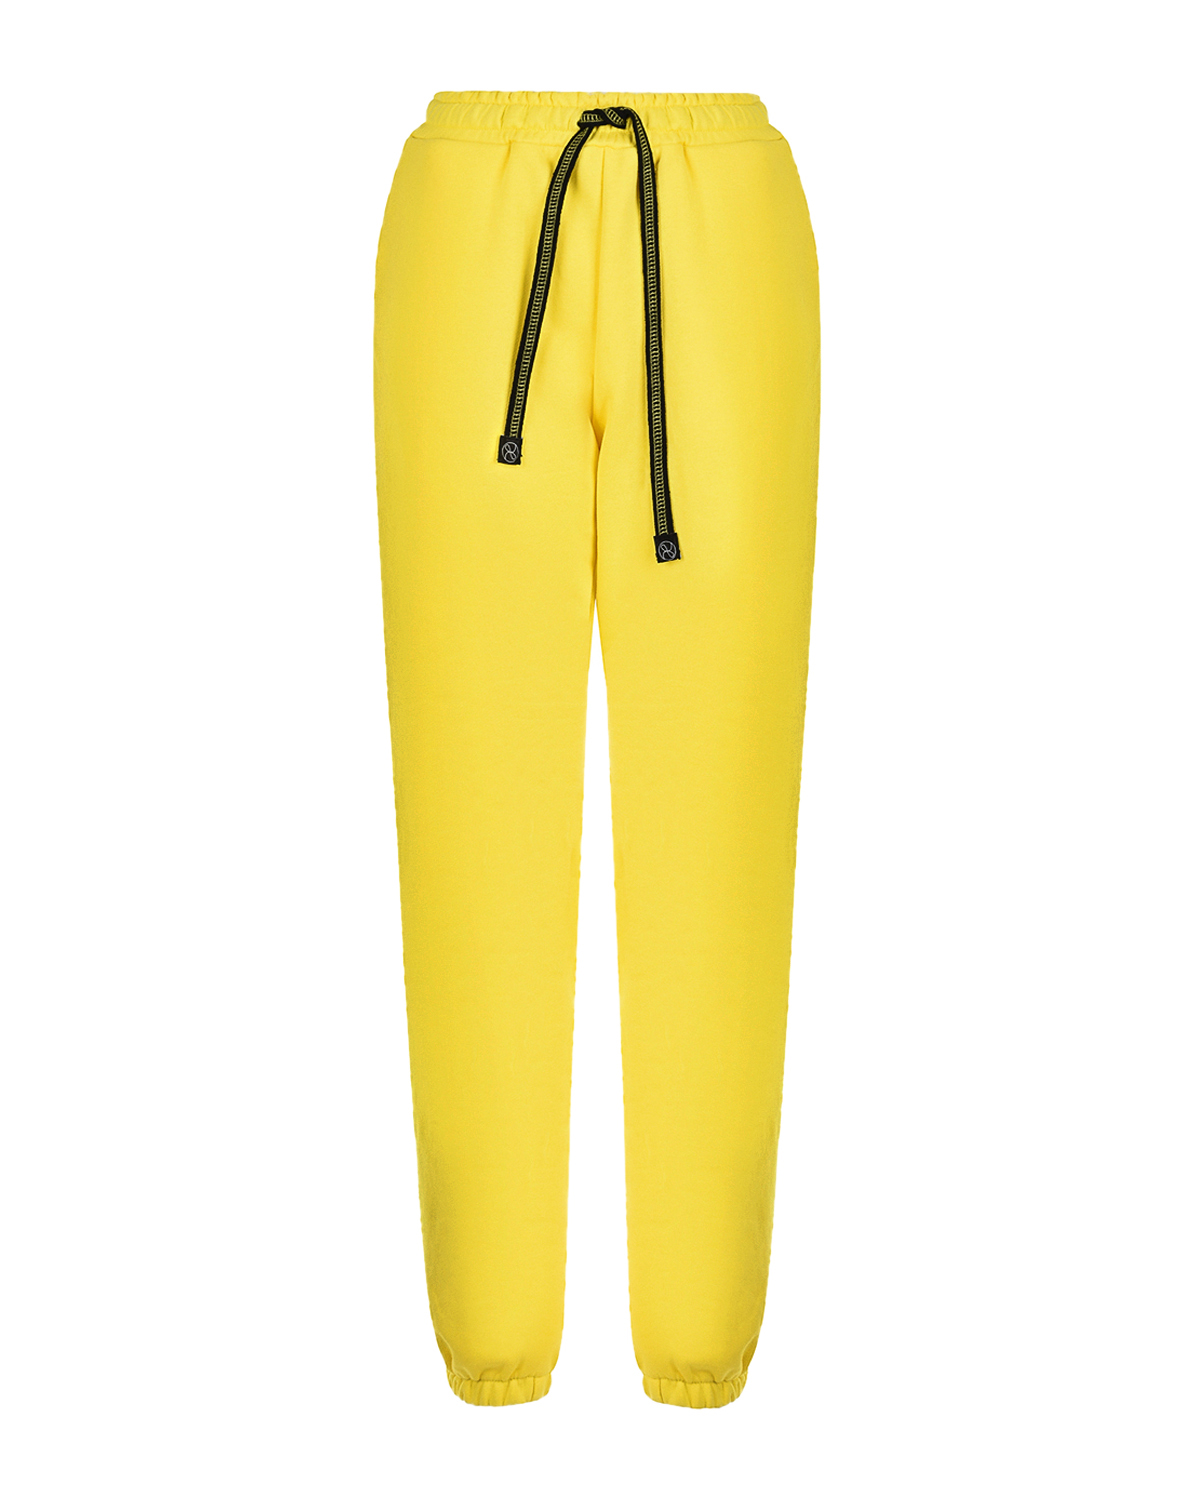 Желтые трикотажные брюки Dan Maralex, размер 42, цвет желтый - фото 1